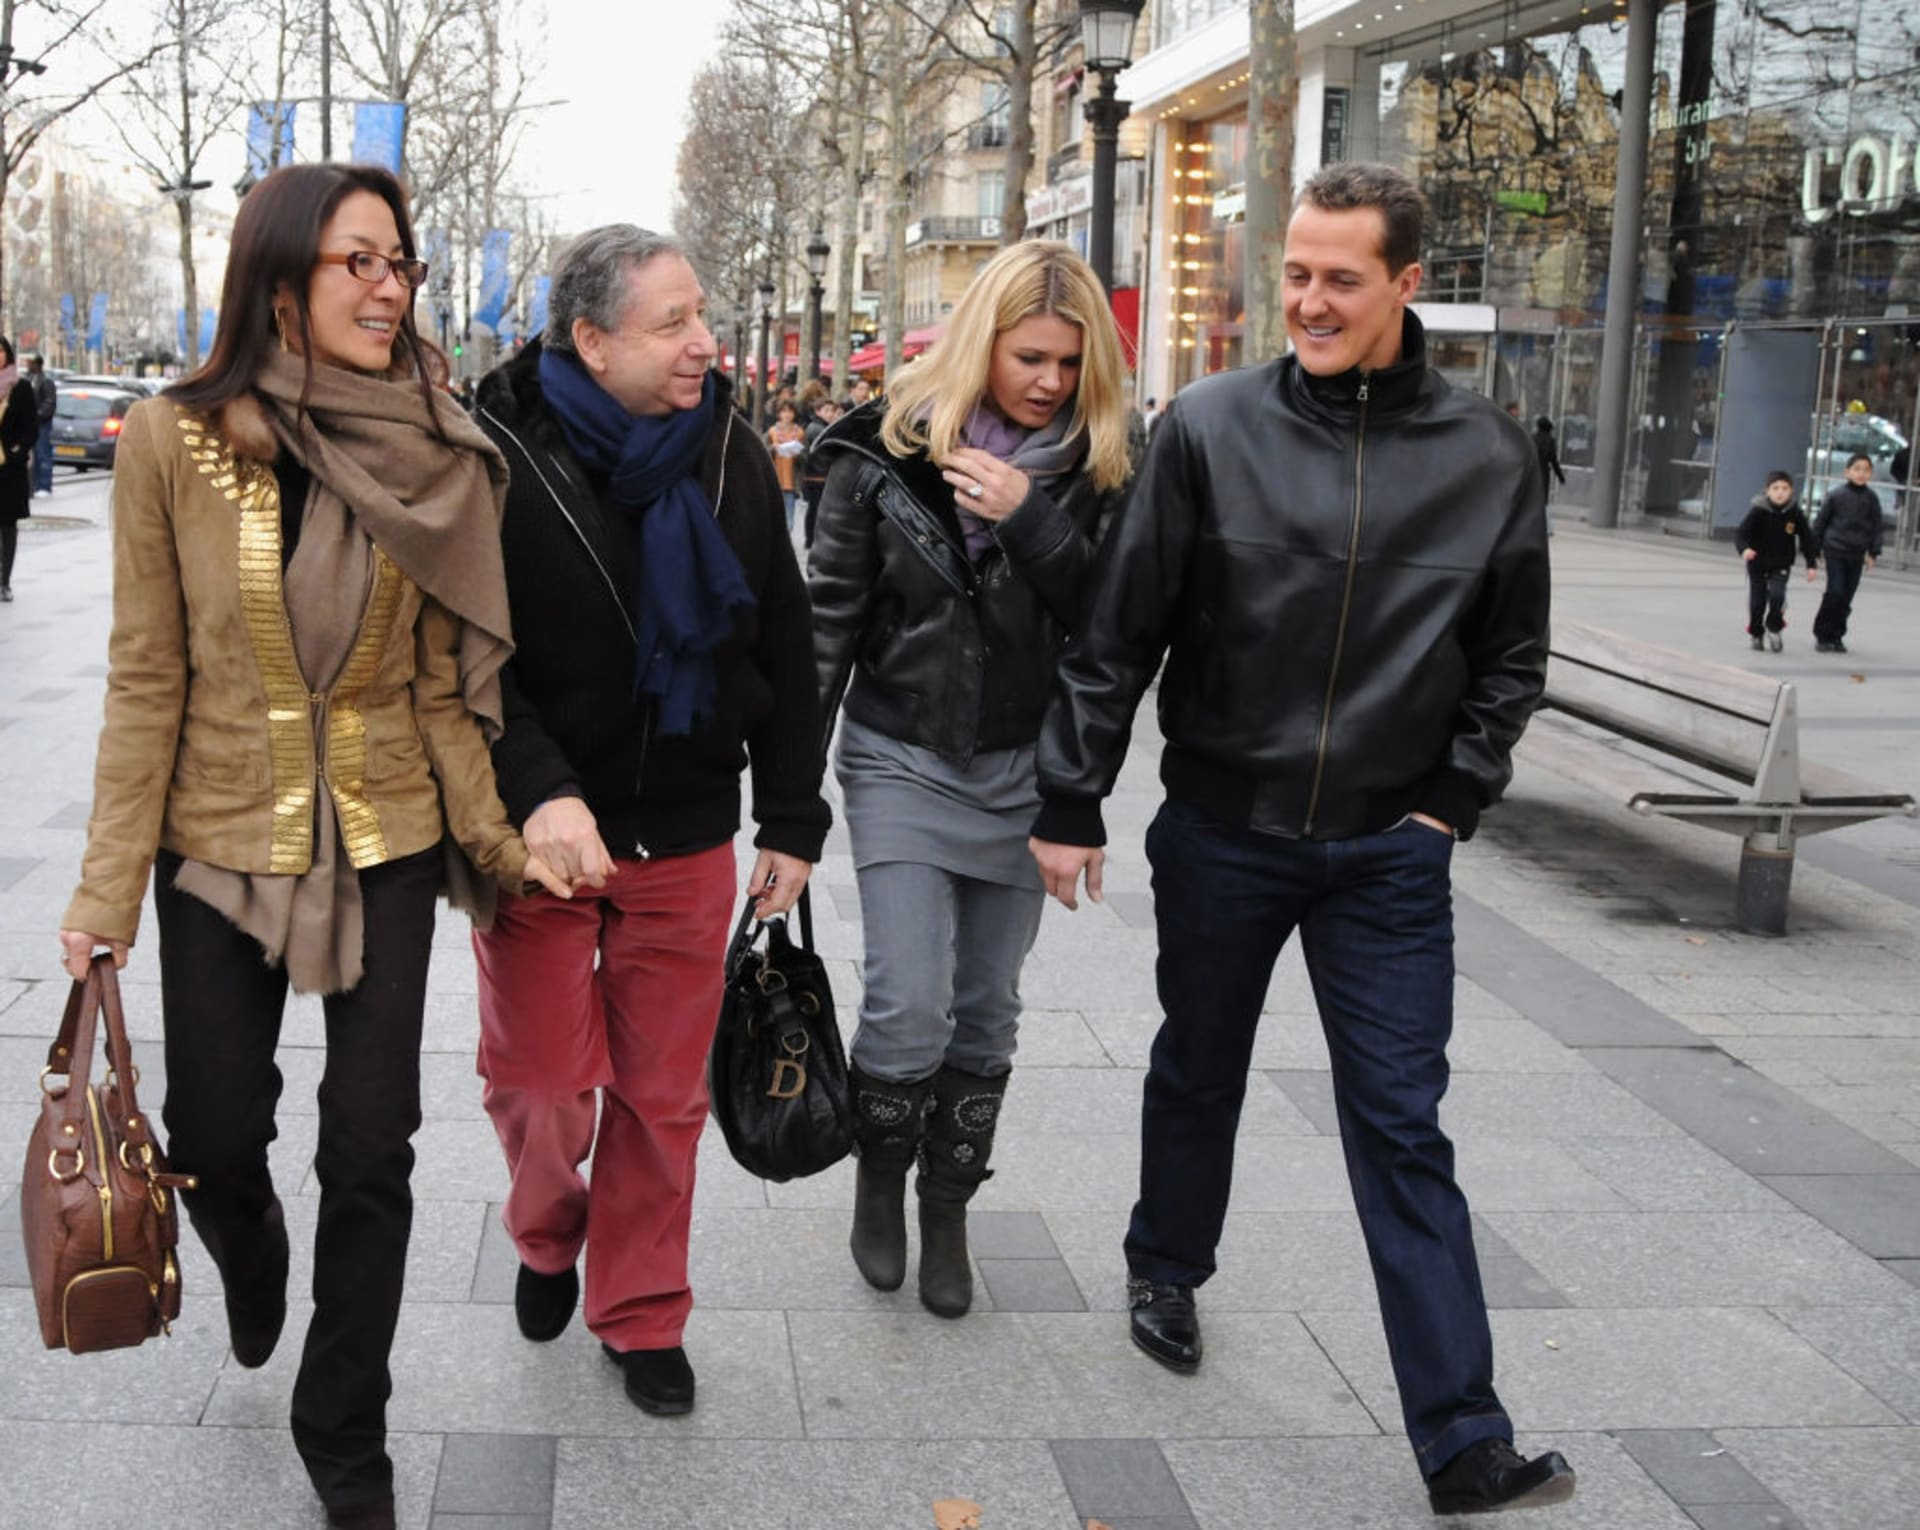 Německý pilot formule 1 Michael Schumacher (vpravo) kráčí se svou manželkou Corinnou, bývalým ředitelem stáje Ferrari Jeanem Todtem a jeho partnerkou Michelle Yeohovou po pařížské ulici Champs Elyseés na premiéru filmu Asterix na olympijských hrách. Snímek je ze 14. ledna 2008.